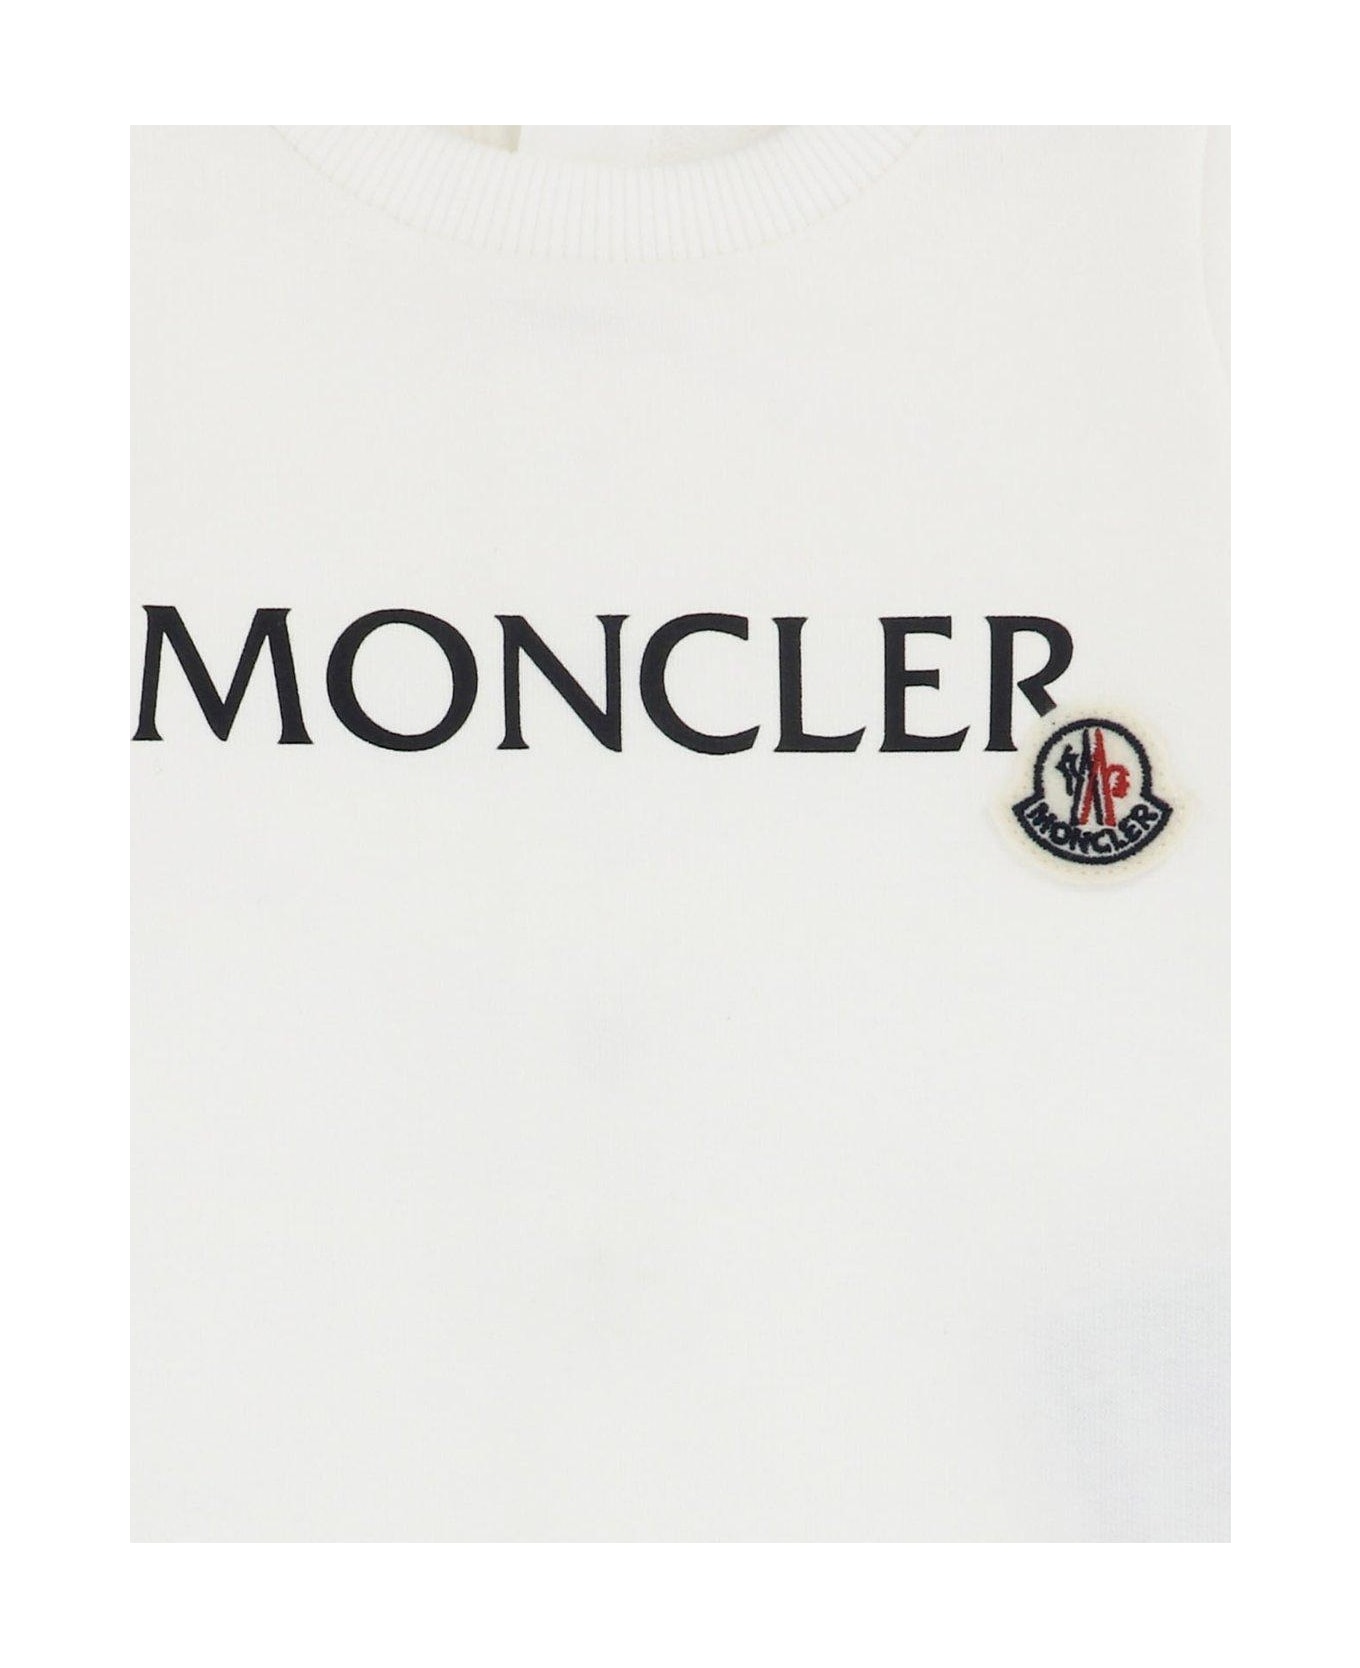 Moncler Logo-printed Long Sleeved Romper - White